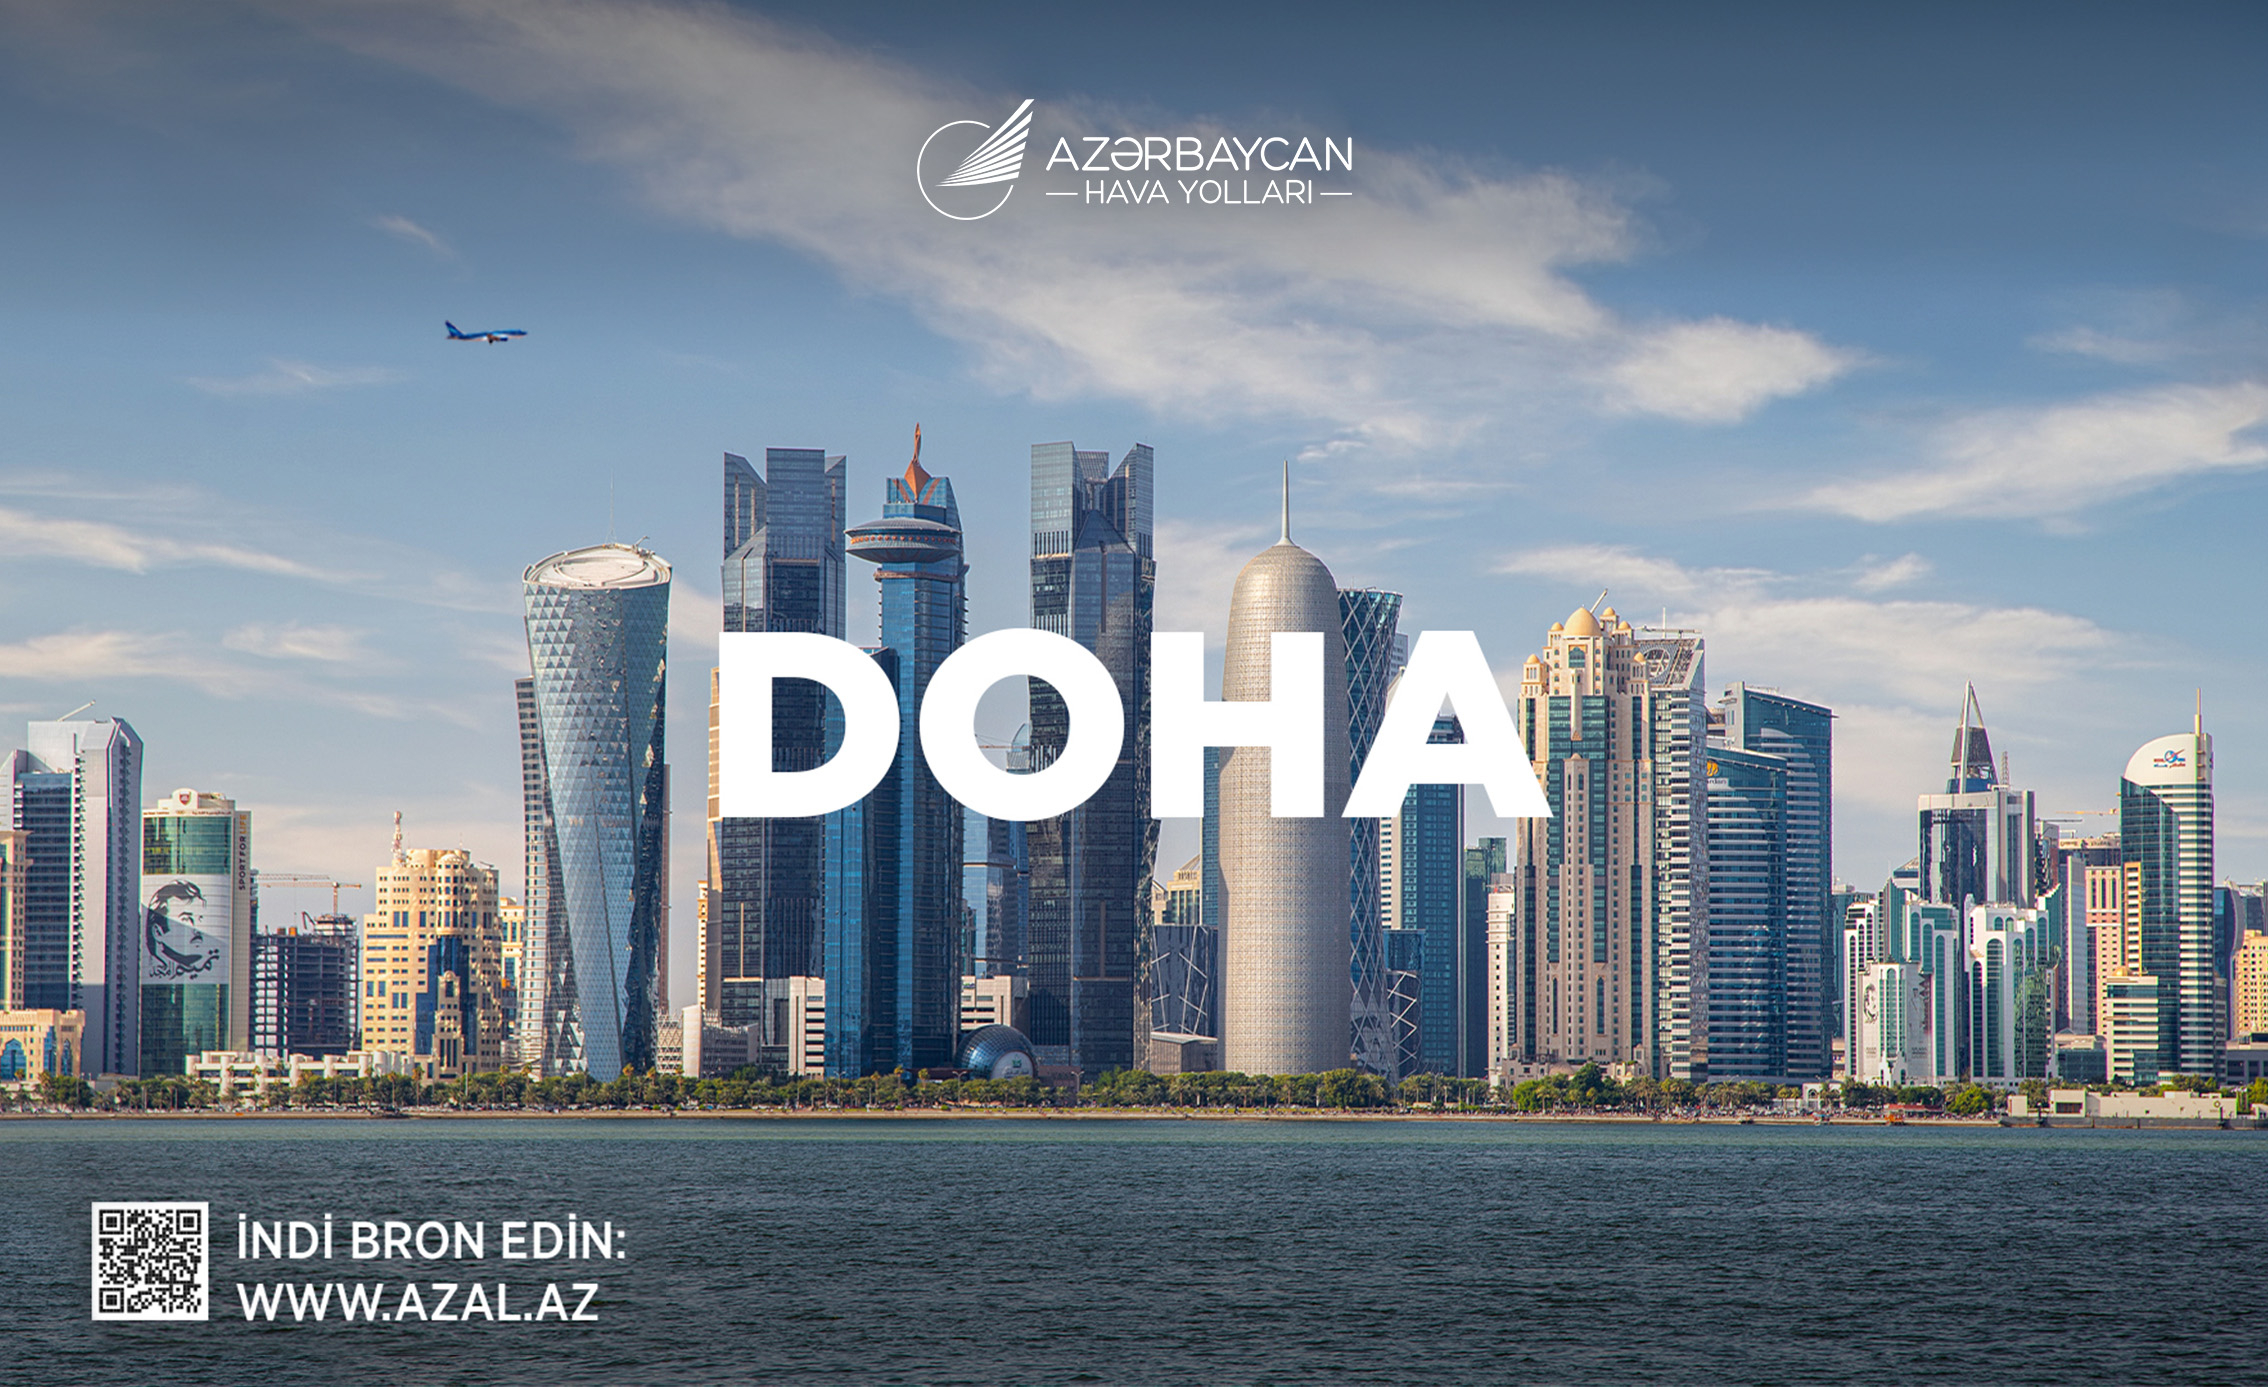 AZAL Bakı ilə Doha arasında uçuşlar həyata keçirəcək